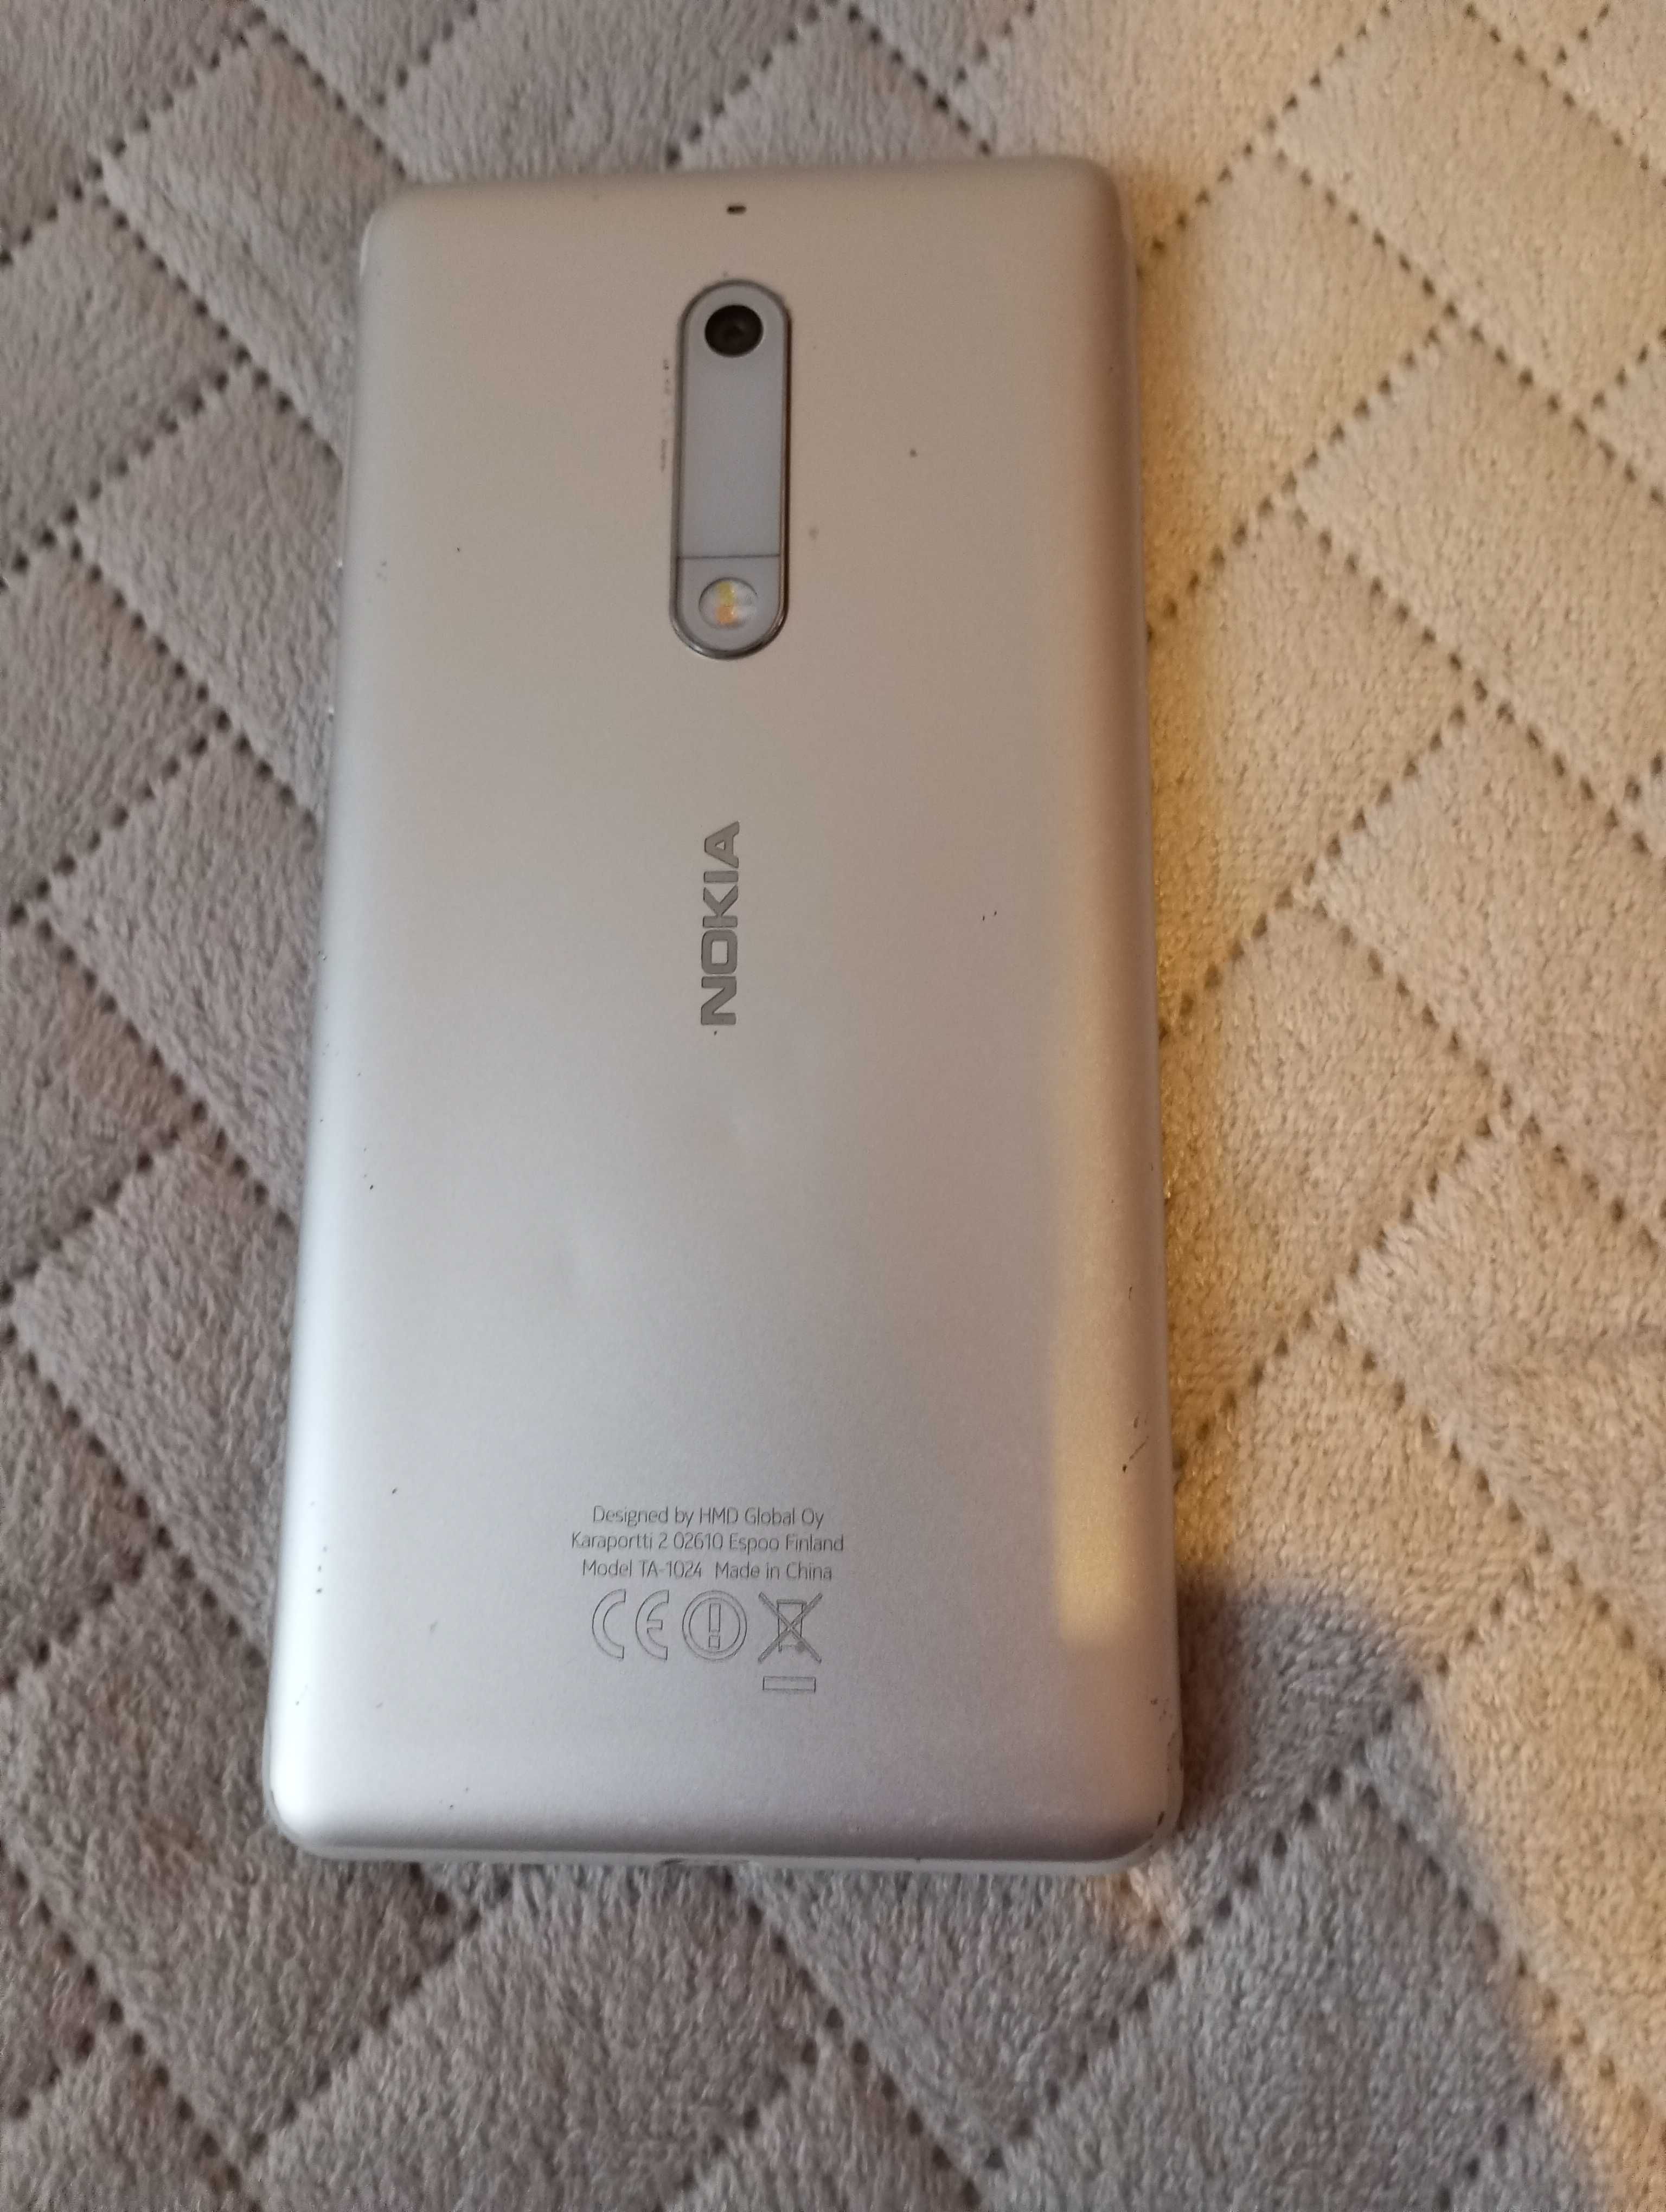 Nokia 5 (2Gb/16Gb) -srebrny, używany, stan dobry, sprawny. Gratis ETUI